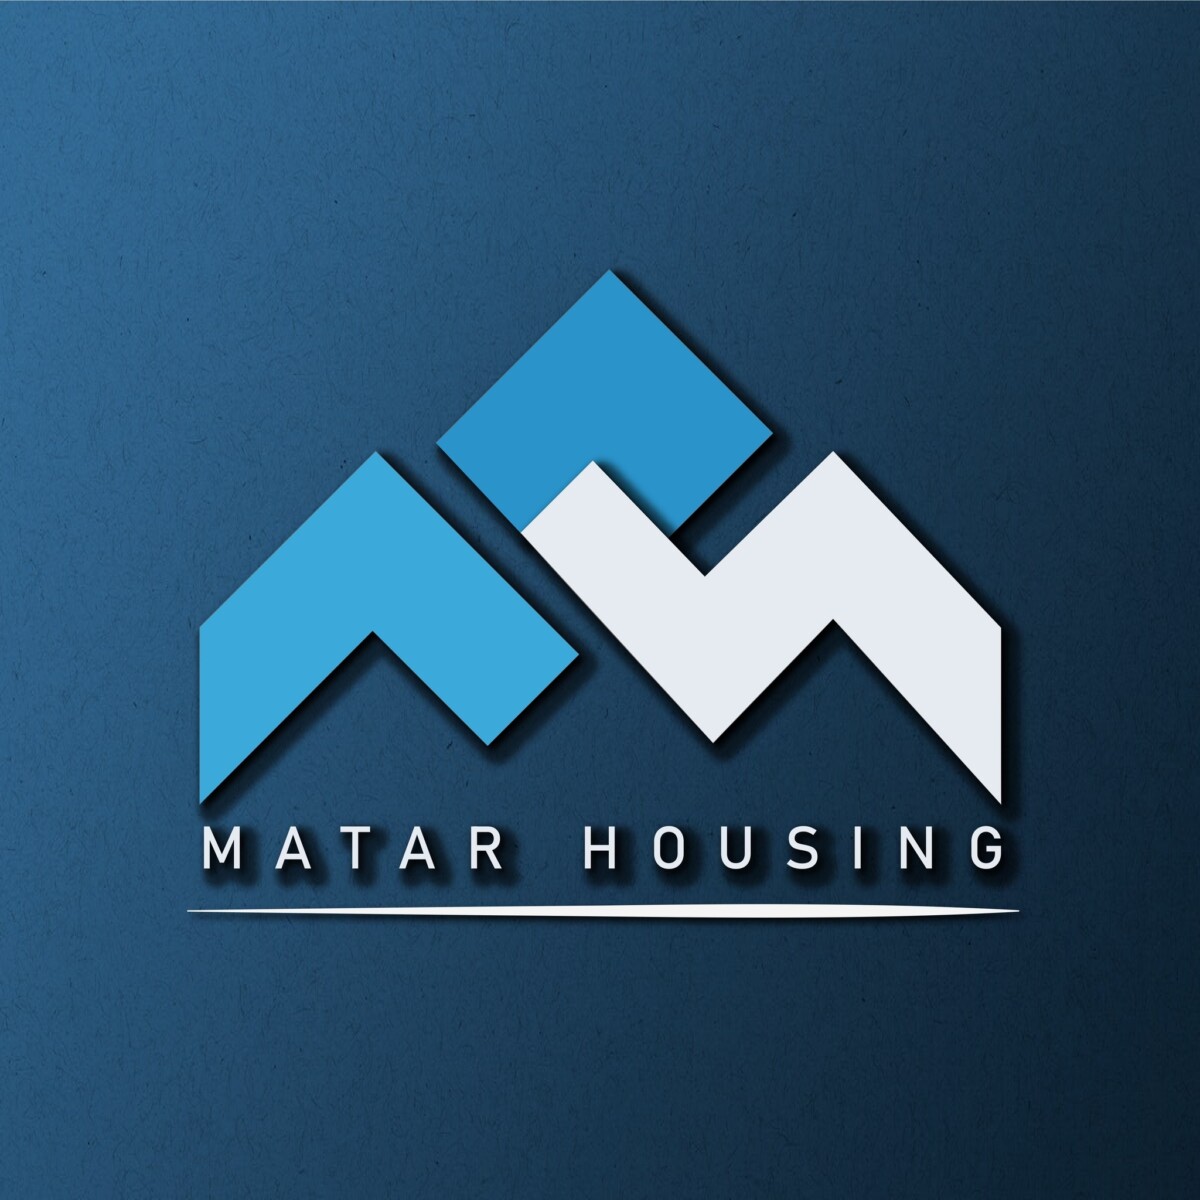 Matar housing